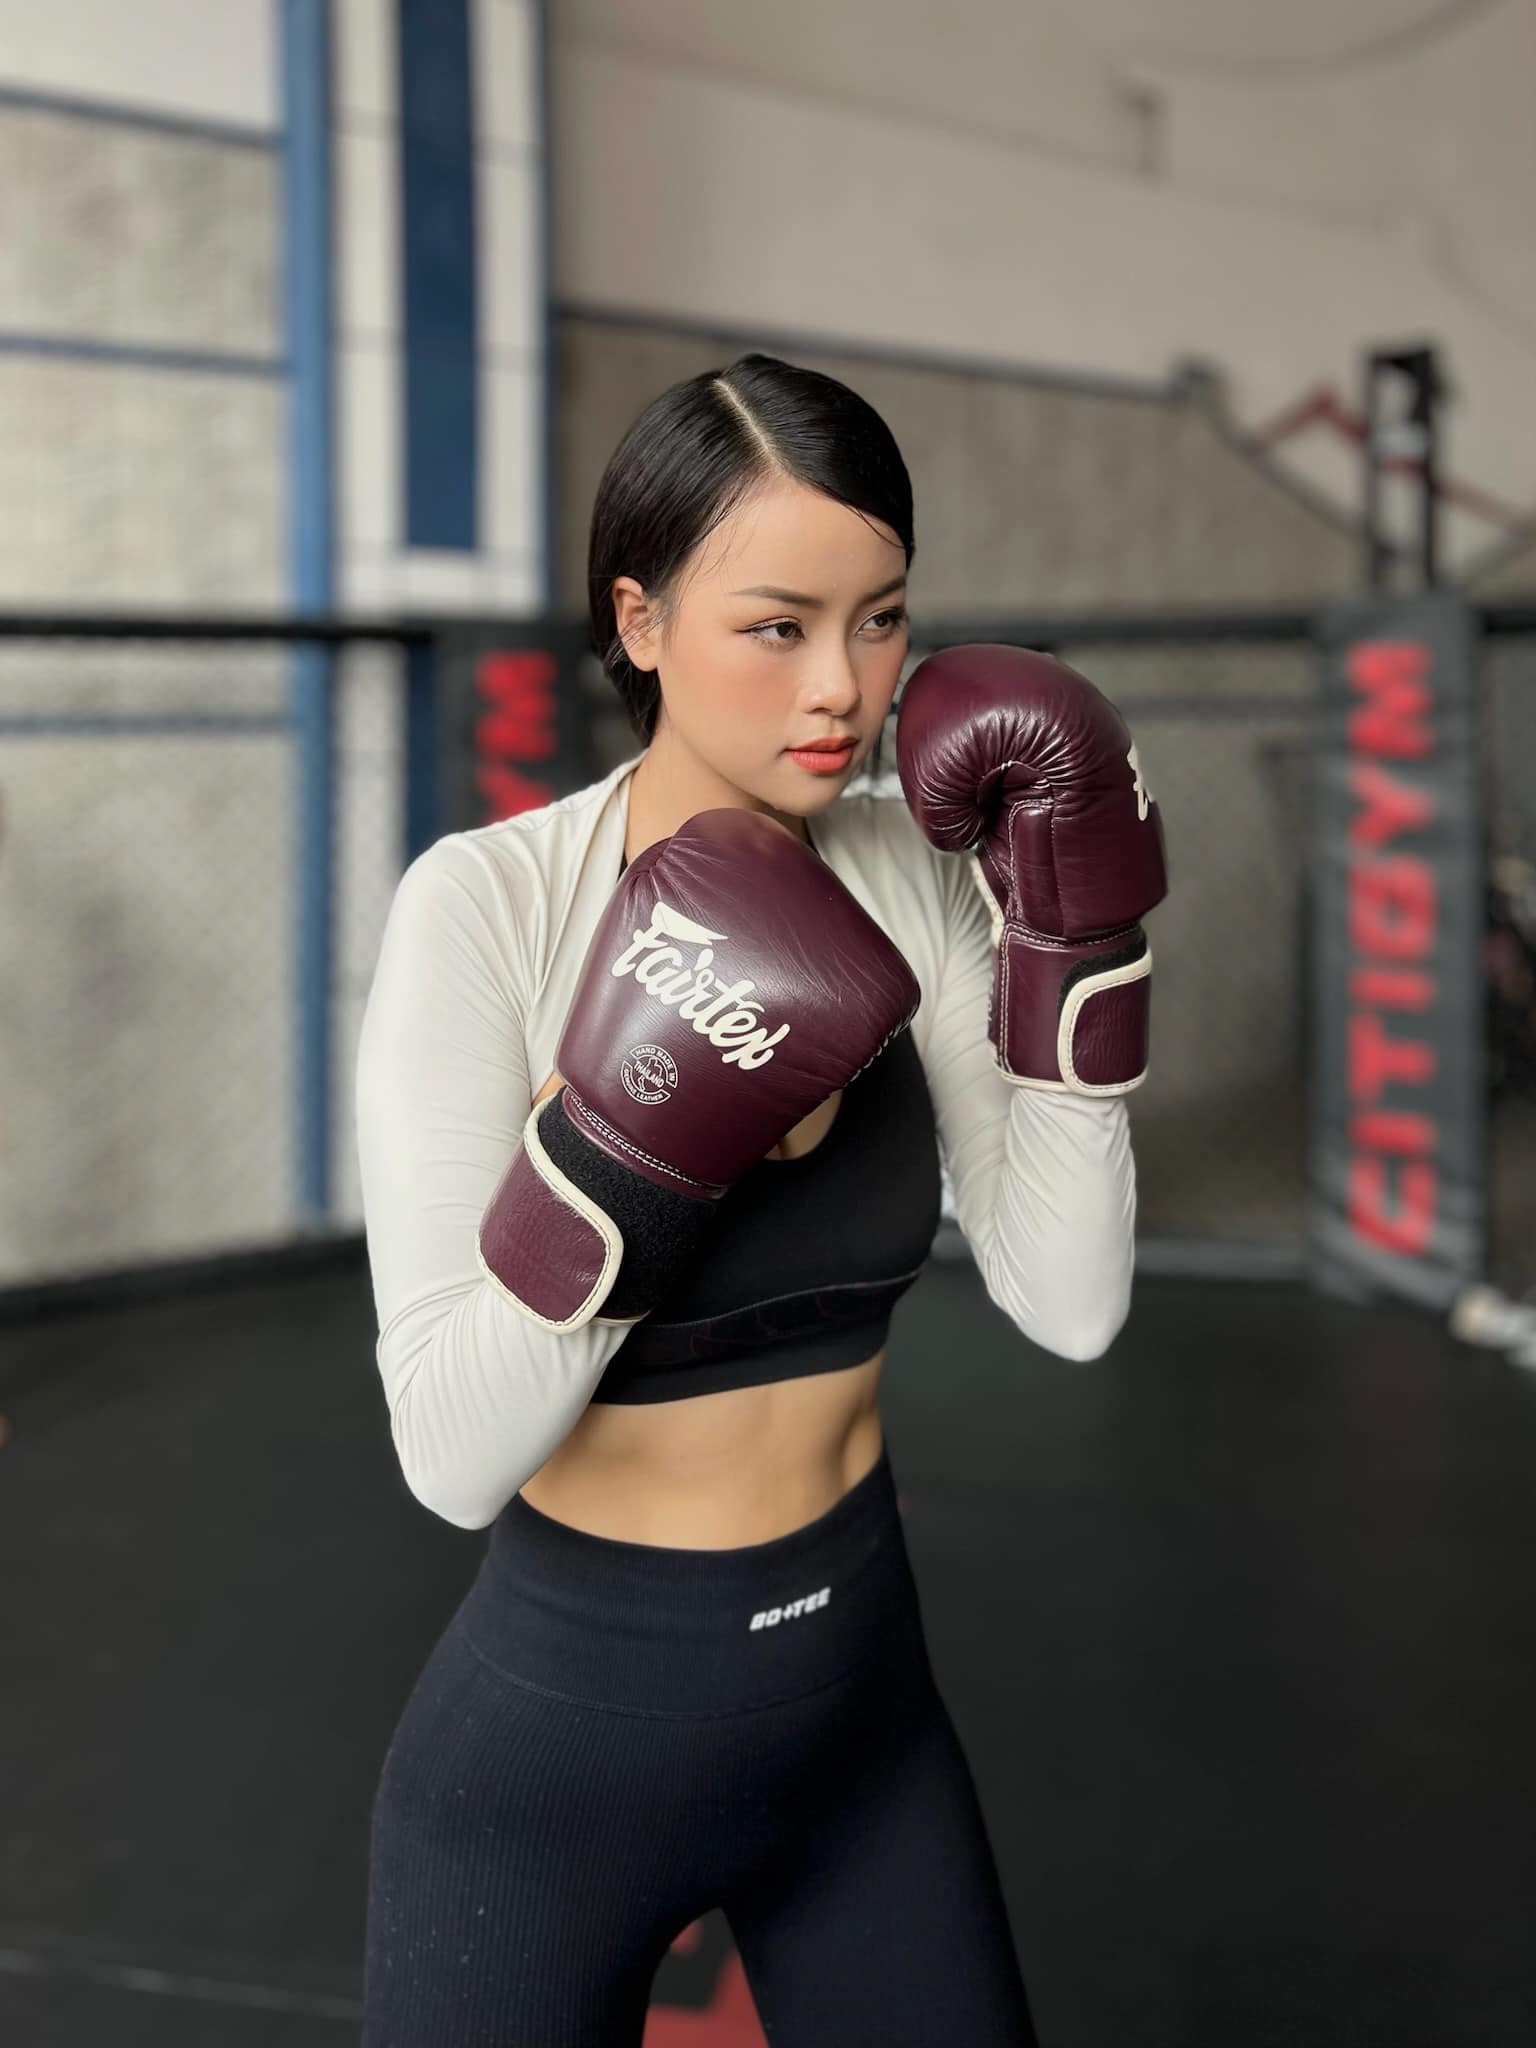 Đào Hiền là thí sinh đến từ Nghệ An. Cô được người hâm mộ dự đoán lọt top cao chung cuộc. Đào Hiền chọn boxing là bộ môn rèn dáng, có hiệu quả trong thời gian ngắn.